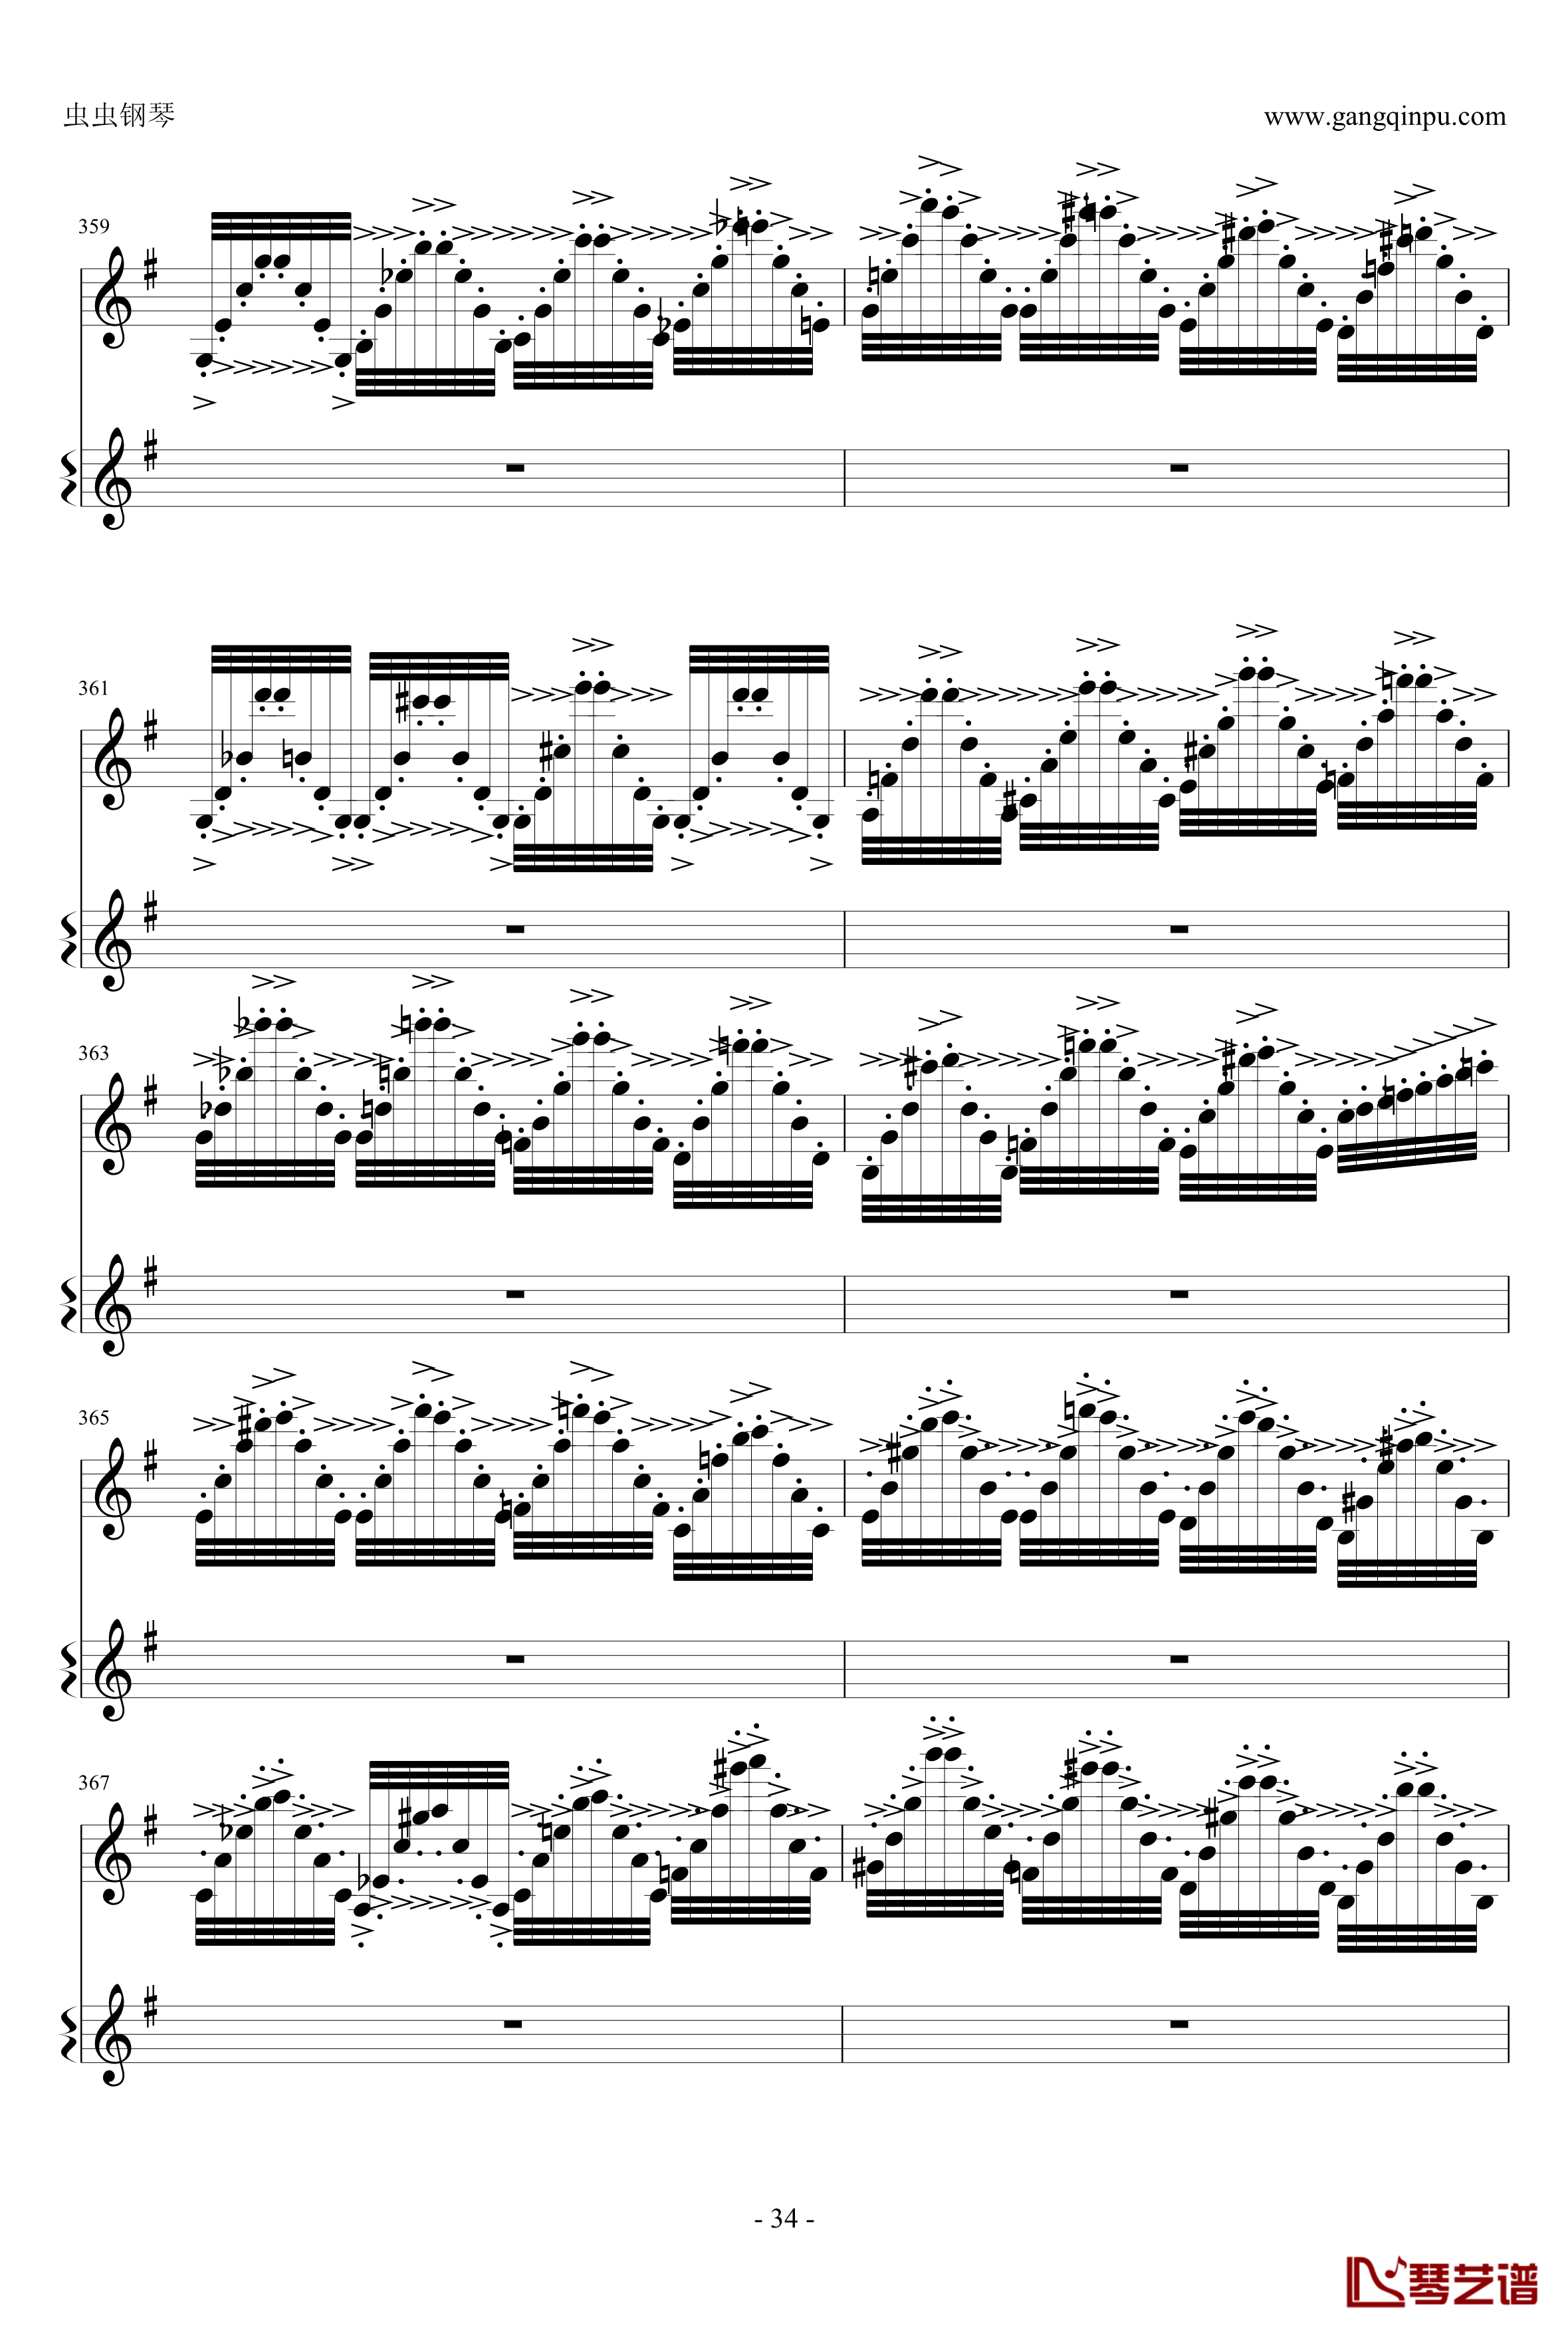 意大利国歌钢琴谱-变奏曲修改版-DXF34